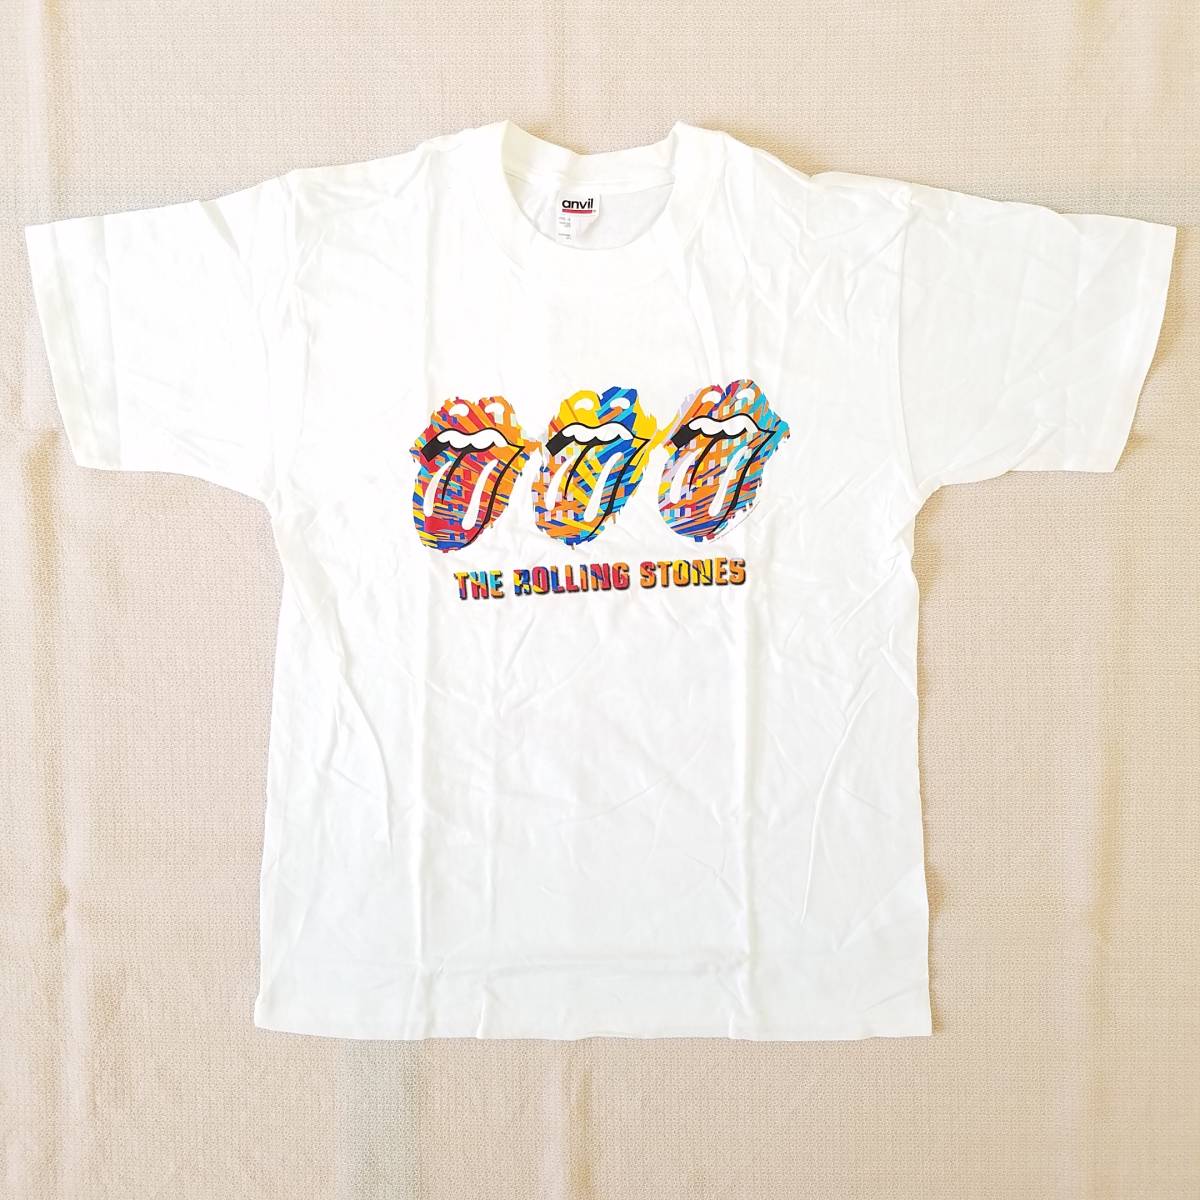 魅惑のバンドT特集! 00sデッド『THE ROLLING STONES(ザ・ローリング・ストーンズ) / WORLD TOUR 2002 2003 DATEBACK』Tシャツ anvil 白 Mの画像1